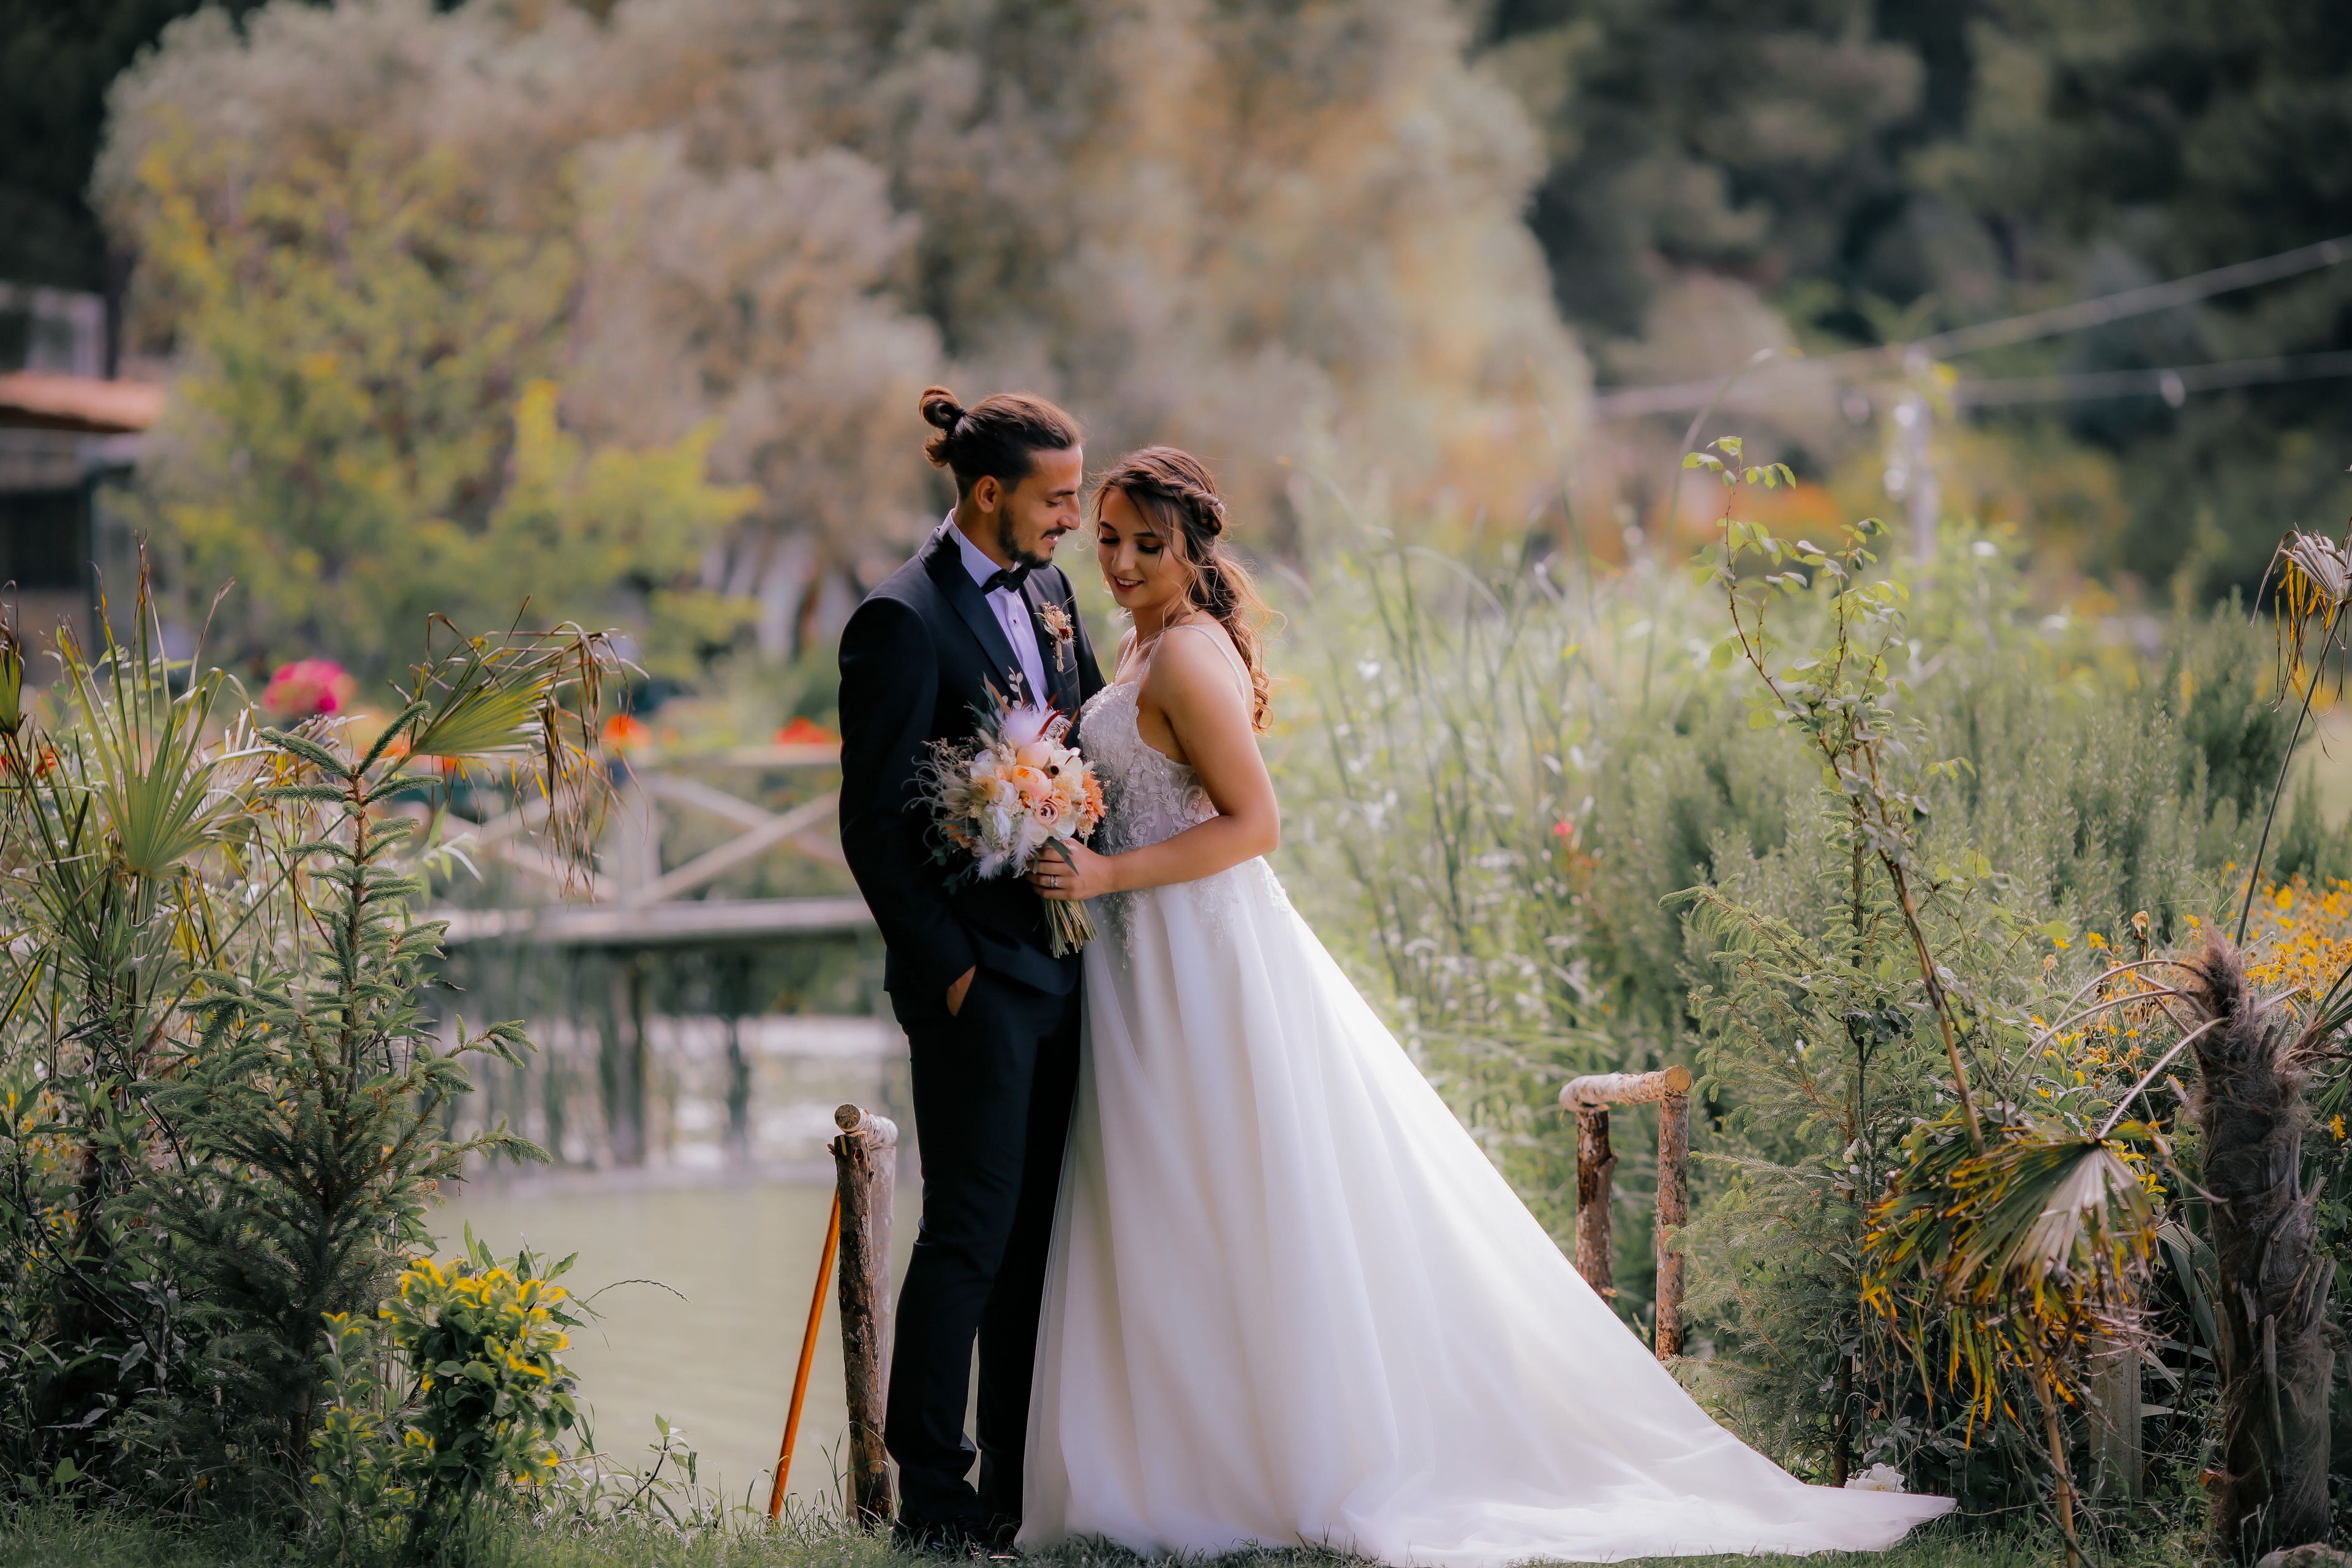 cuánto cuesta celebrar una boda en España: listado de precios